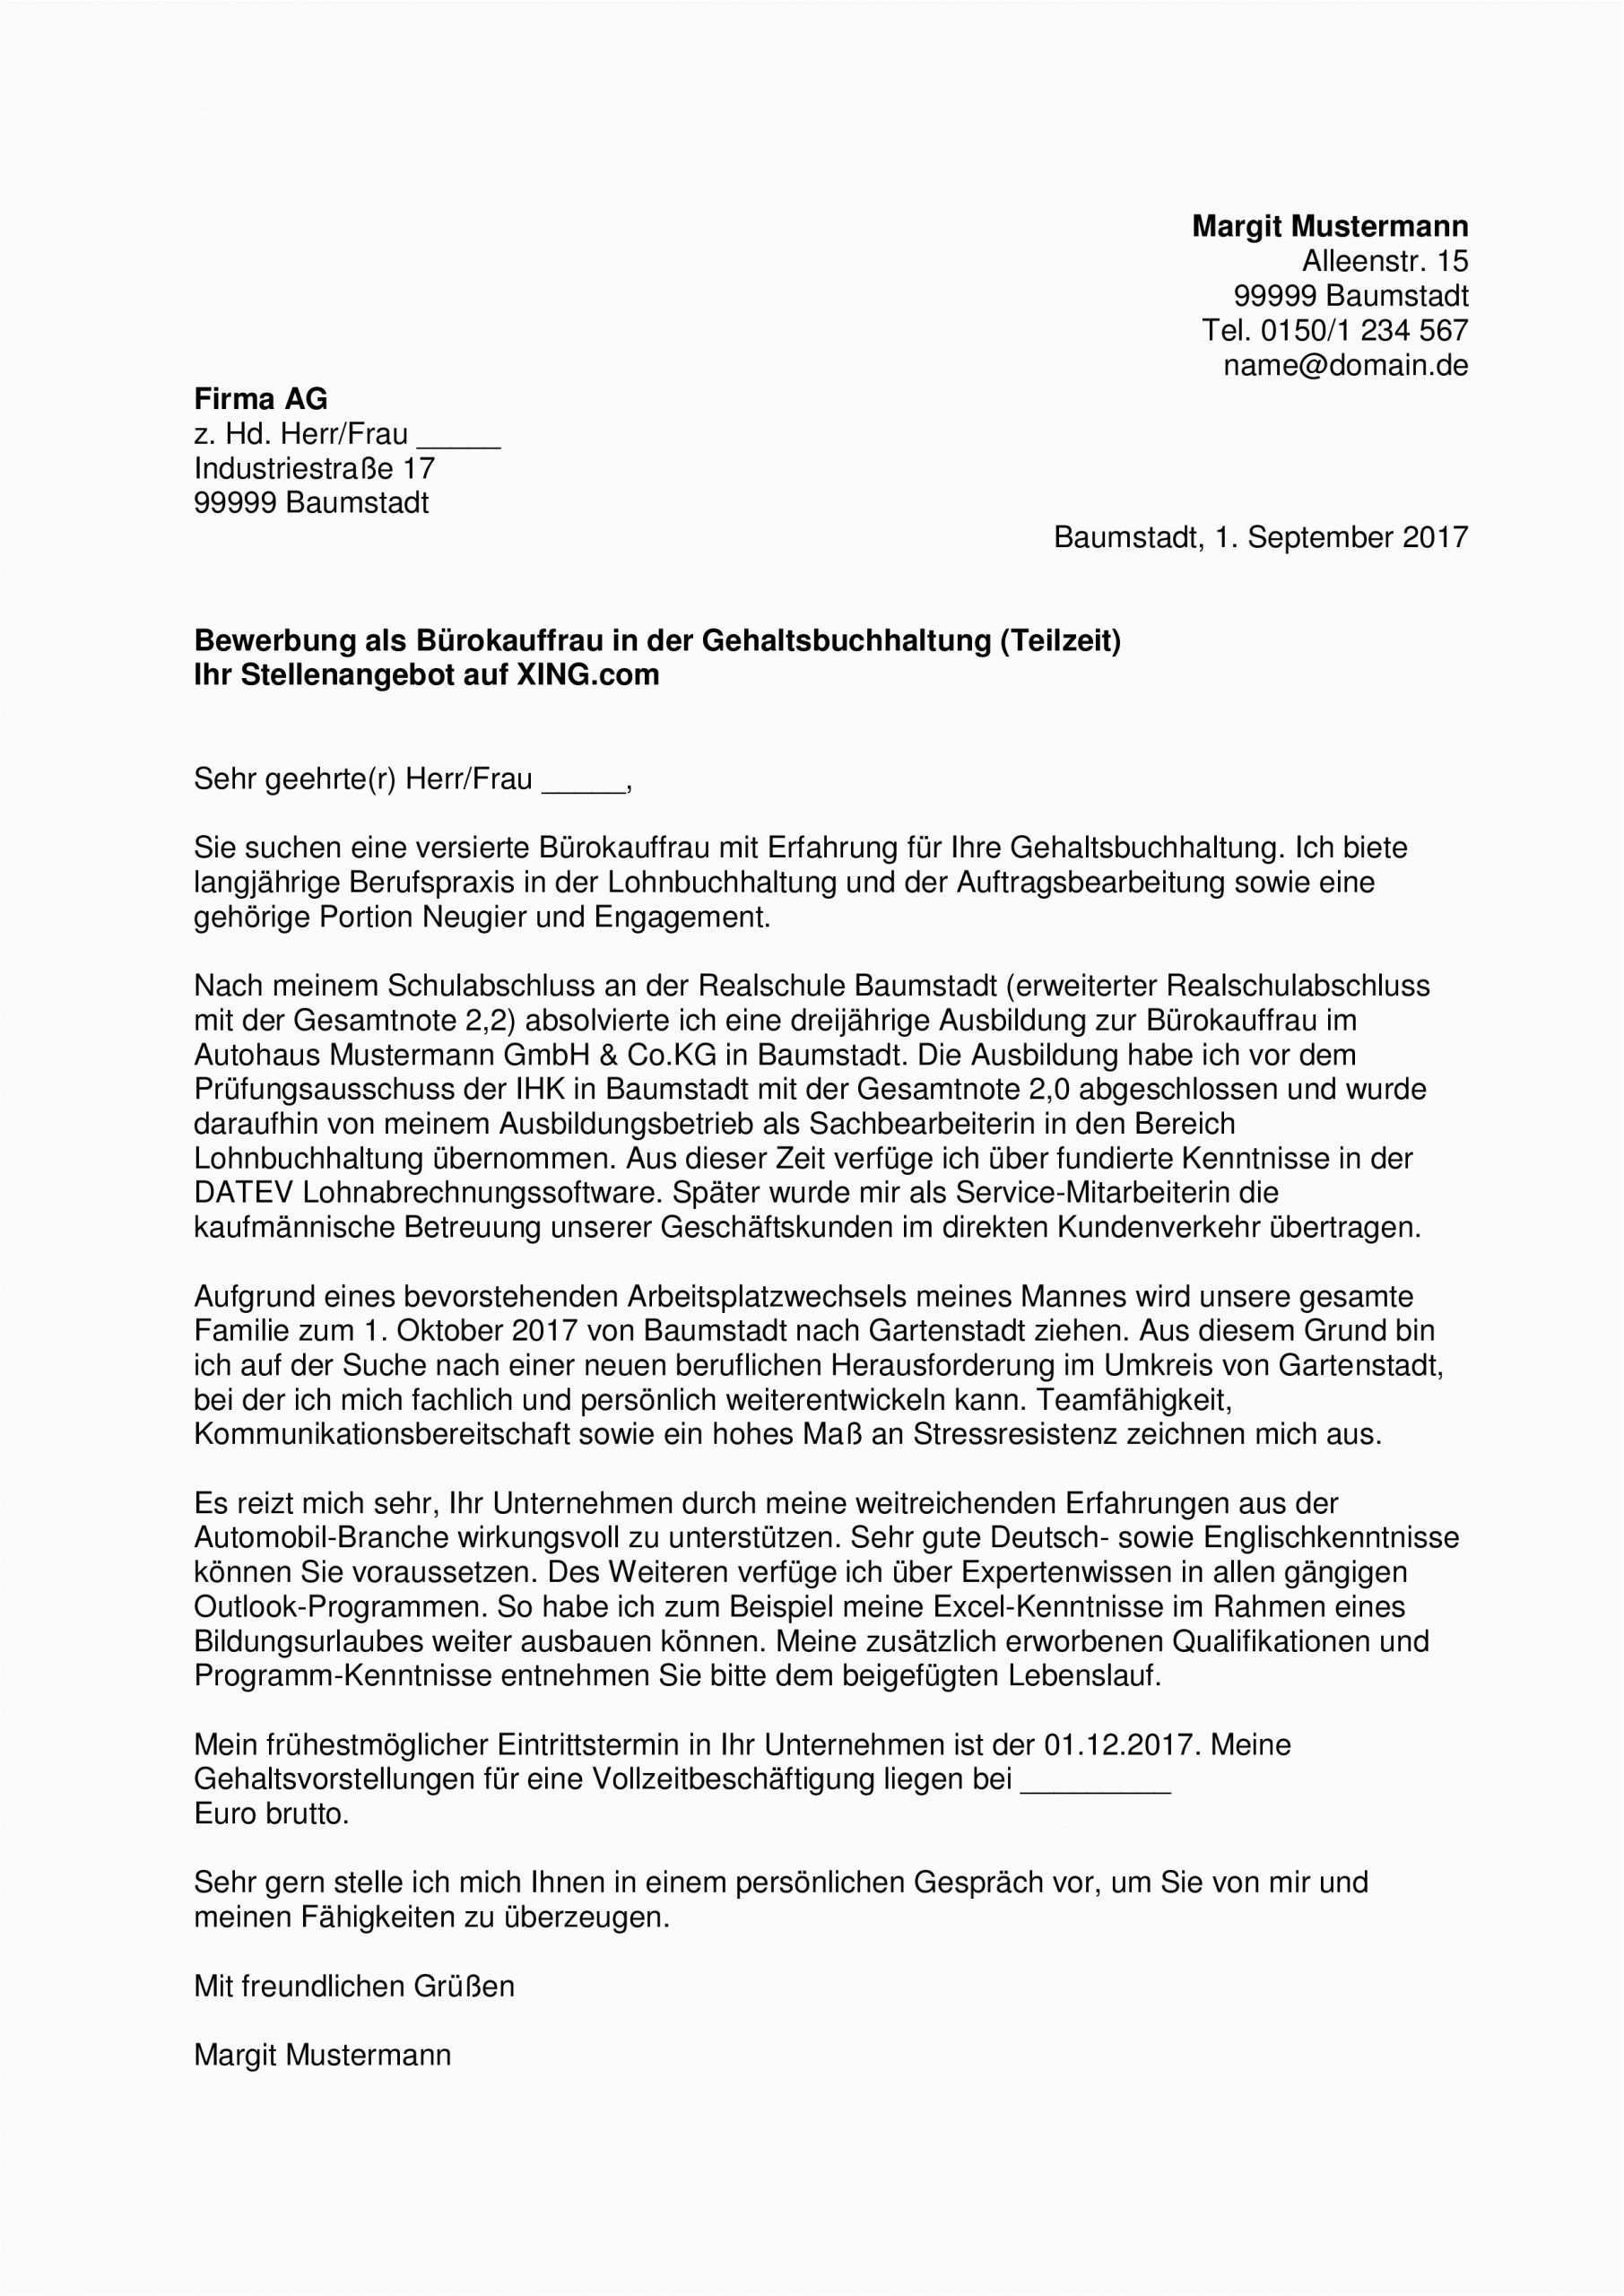 Xing Lebenslauf Deutsch In 2020 Vorlage Bewerbung Bewerbung Schreiben Bewerbungsschreiben